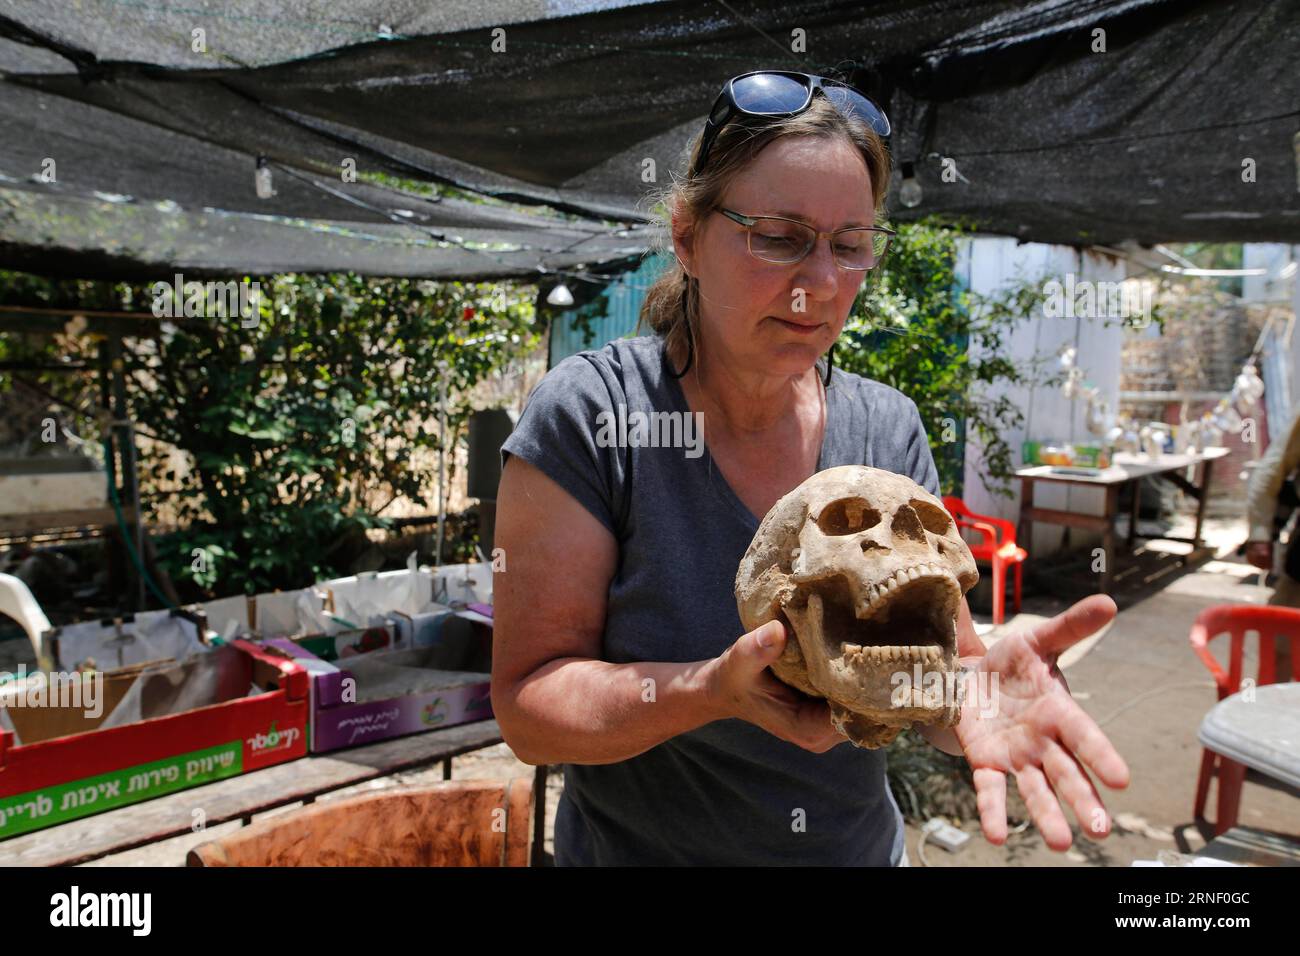 (160710) -- GERUSALEMME, 10 luglio 2016 -- Scholar Sherry Fox mostra il cranio del Filisteo nel sito archeologico del Parco Nazionale di Ashkelon, Israele, il 28 giugno 2016. Gli archeologi hanno detto il 10 luglio 2016 di aver scoperto il primo cimitero filisteo sulla sponda meridionale del Mediterraneo di Israele, sperando che la scoperta risolva la lunga domanda biblica: Da dove proviene l'antico Filisteo? Il cimitero, datato tra l'XI e l'VIII secolo a.C., è stato trovato nella città costiera di Ashkelon nel sud di Israele, una volta una delle cinque città-stato del Filisteo in una regione che è oggi Foto Stock